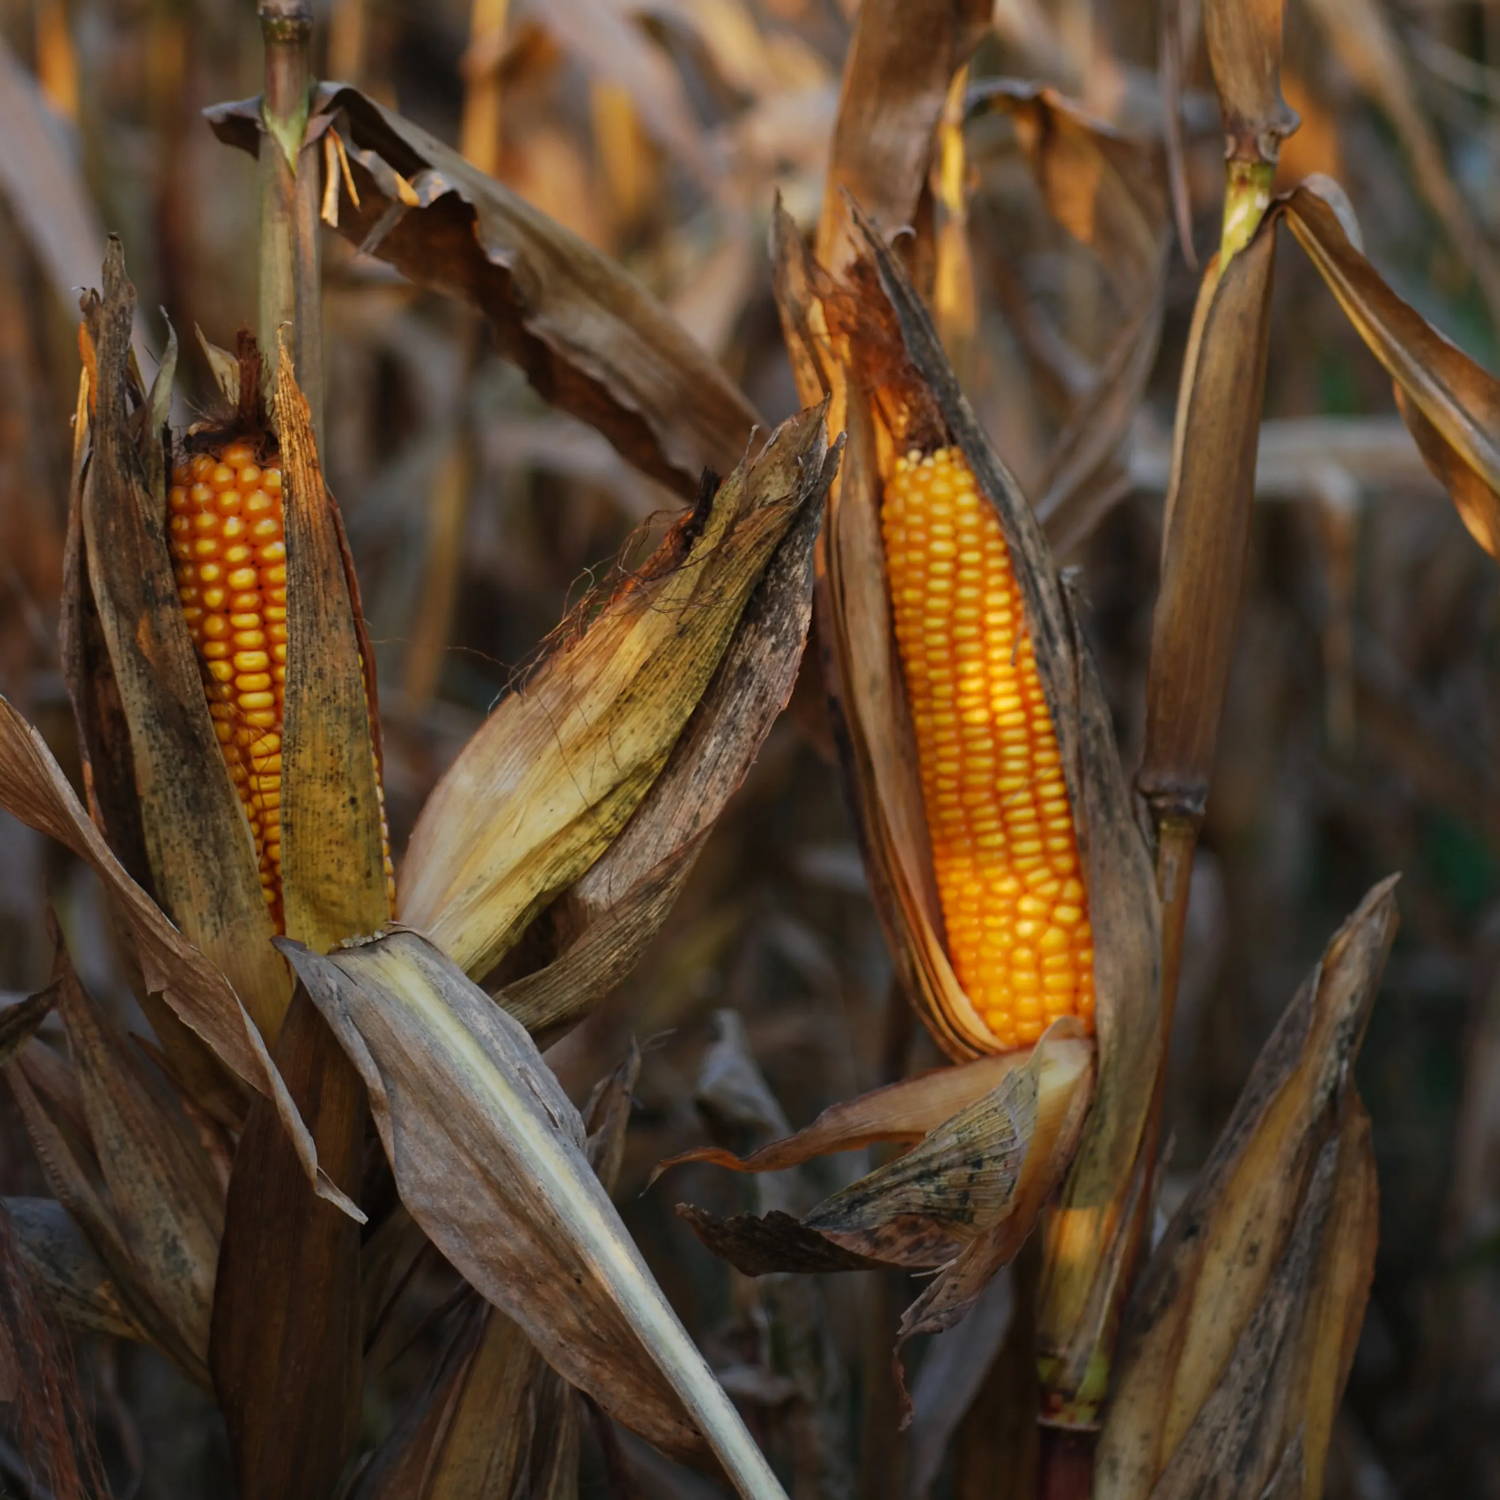 sweetcorn growing in a corn field